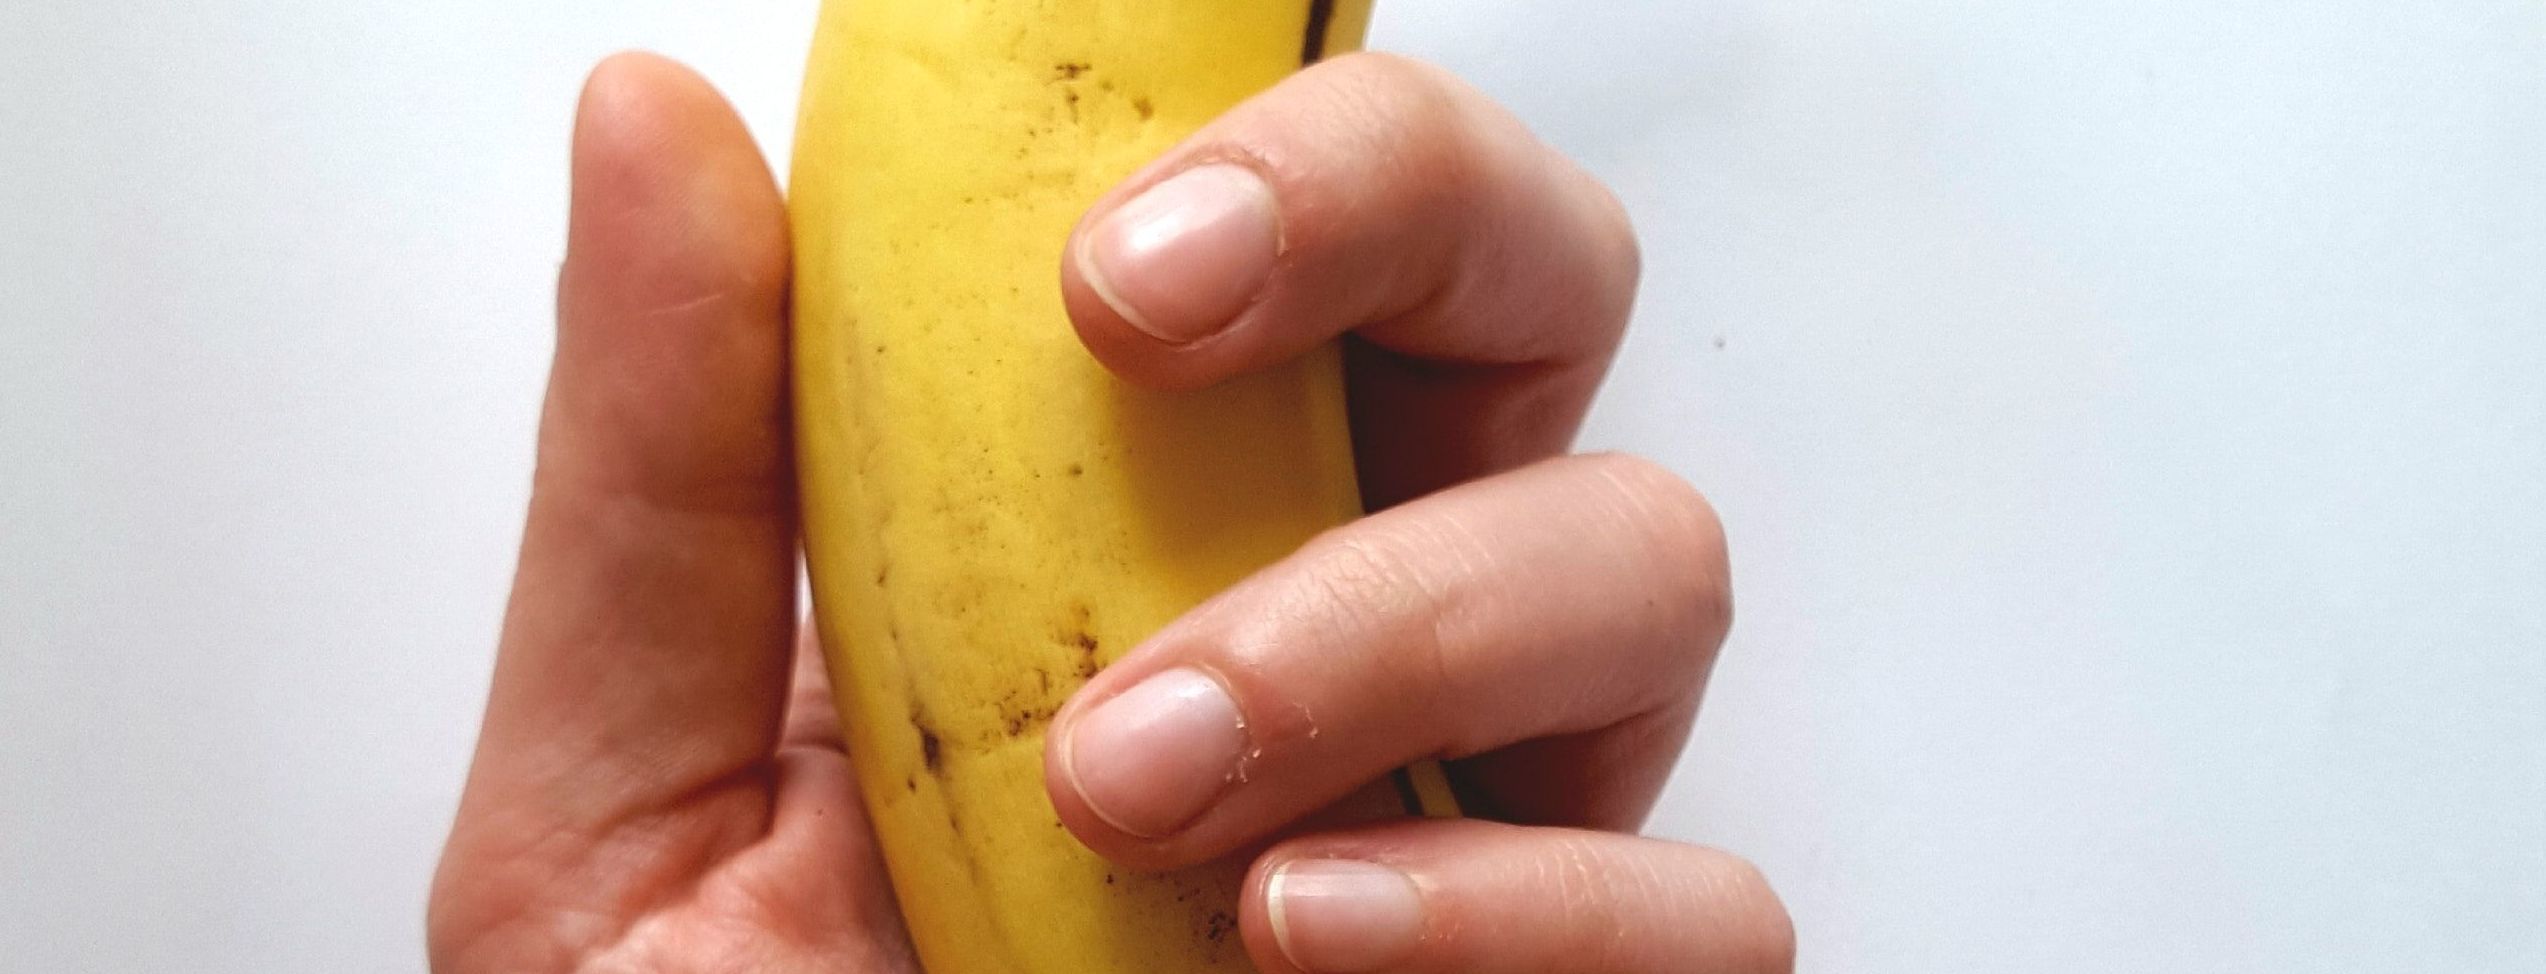 Протягом 30 років на Землі можуть закінчитися банани